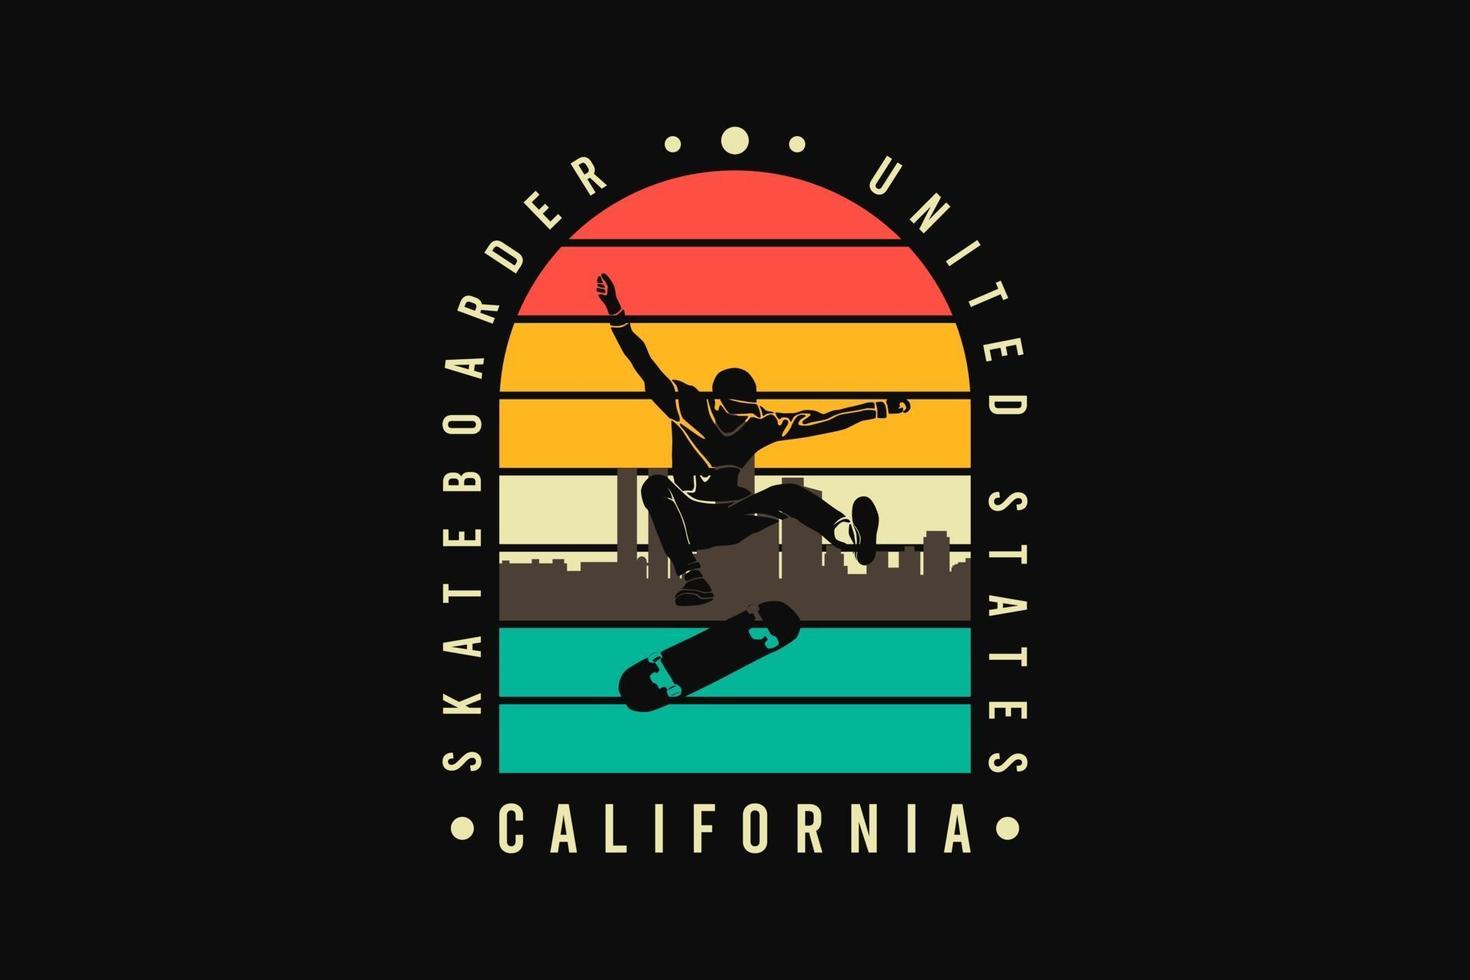 Skateboarder california, silhouette retro style vector